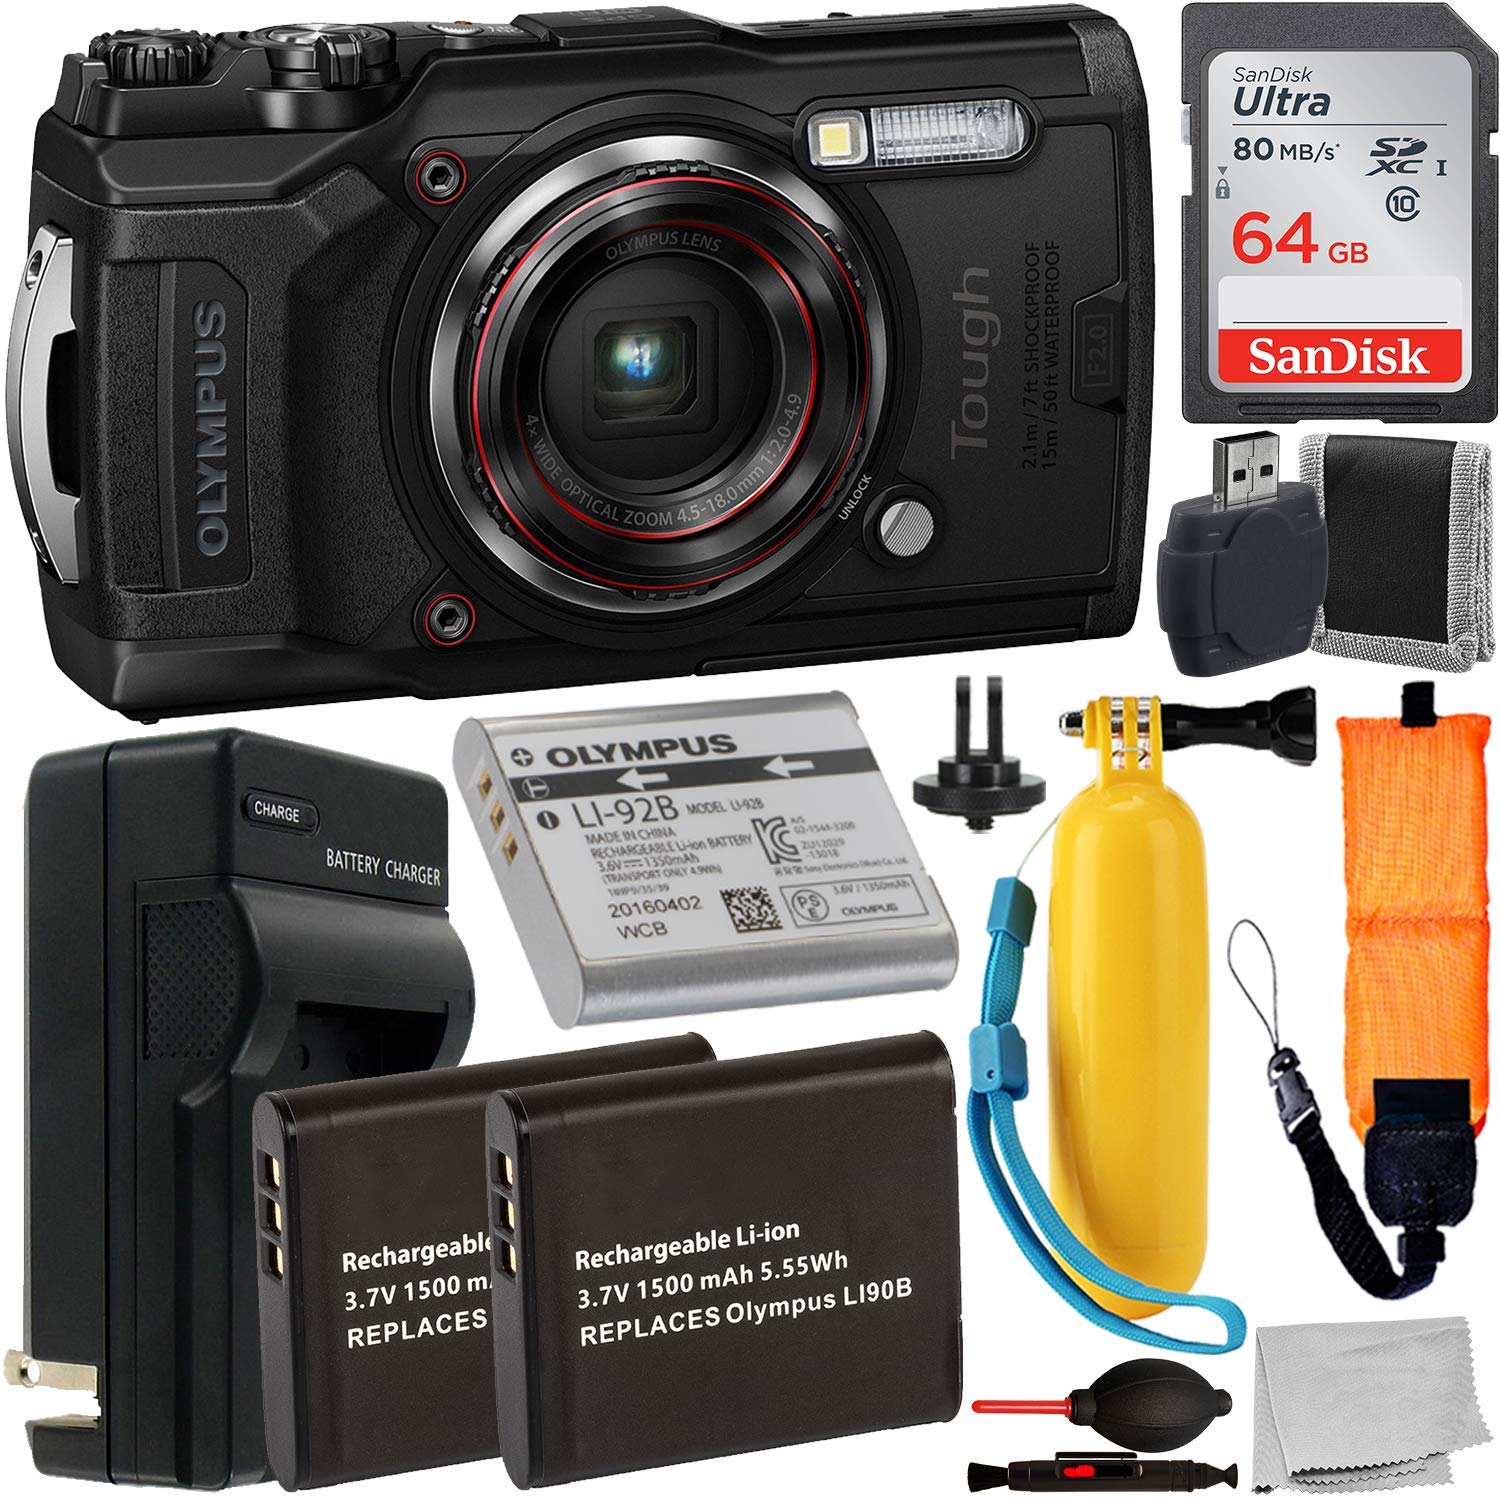 Olympus Tough TG-6 Digital Camera (Black) - V104210BU000 with Accessory Bundle